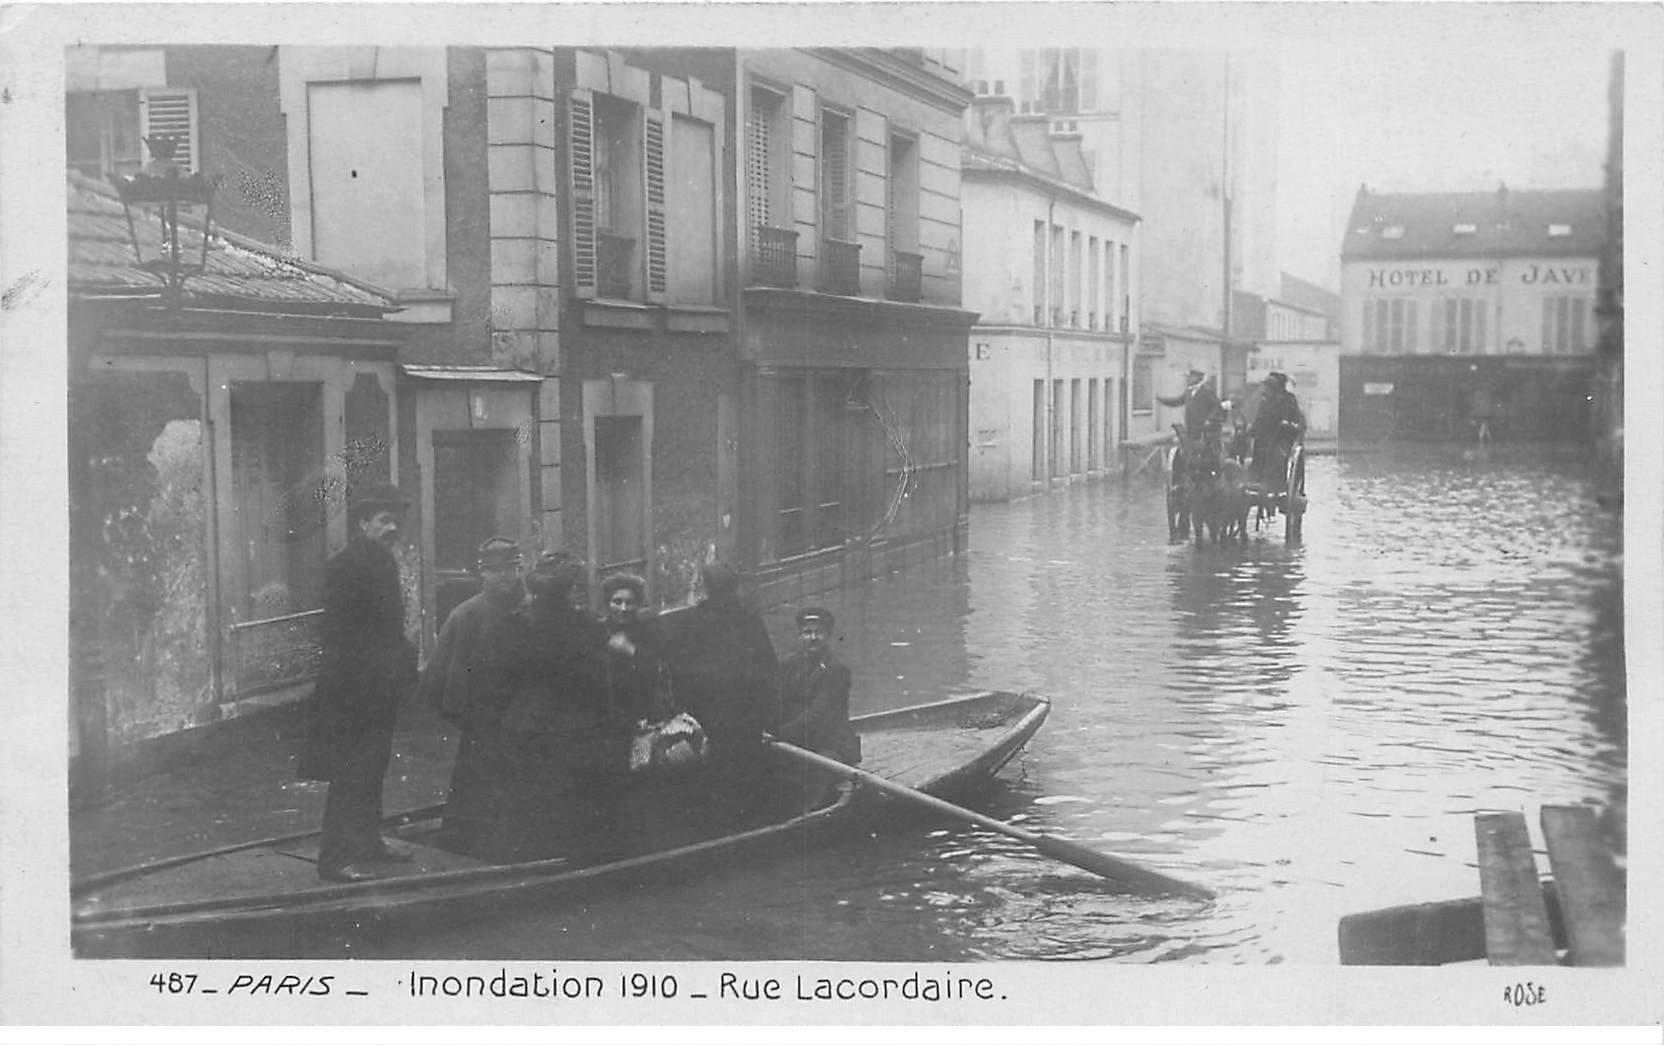 INONDATION DE PARIS 1910. Rue Lacordaire sauveteurs et attelage